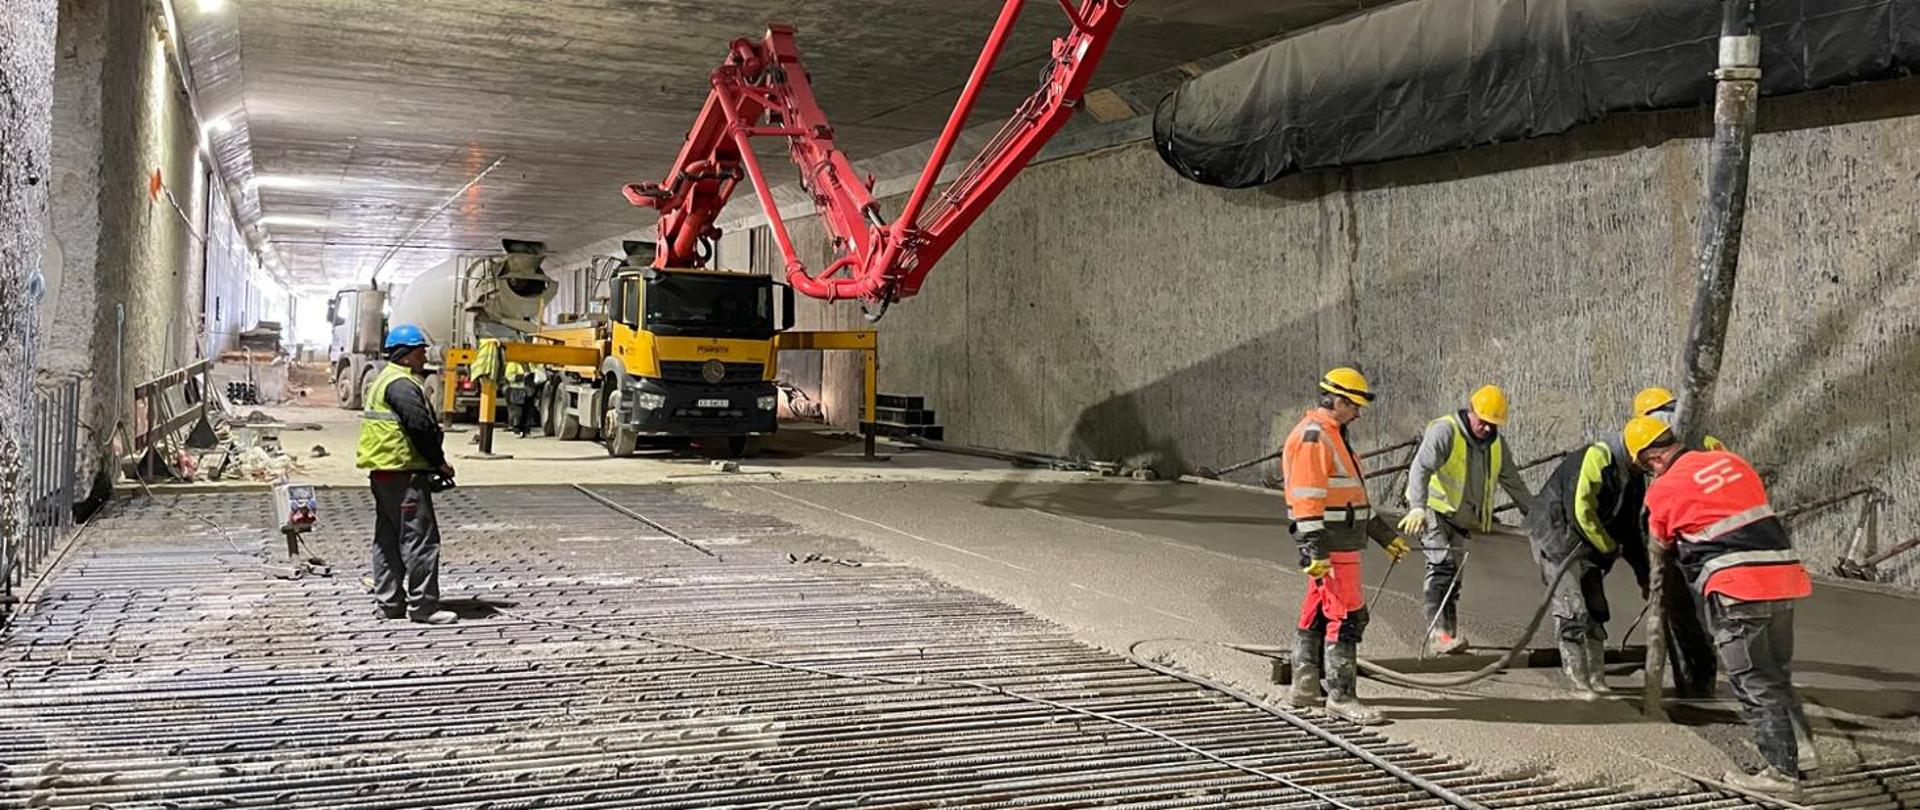 S52 tunel pod Zielonkami betonowanie dna tunelu, na drugim planie pompa betonu, za nią betoniarka